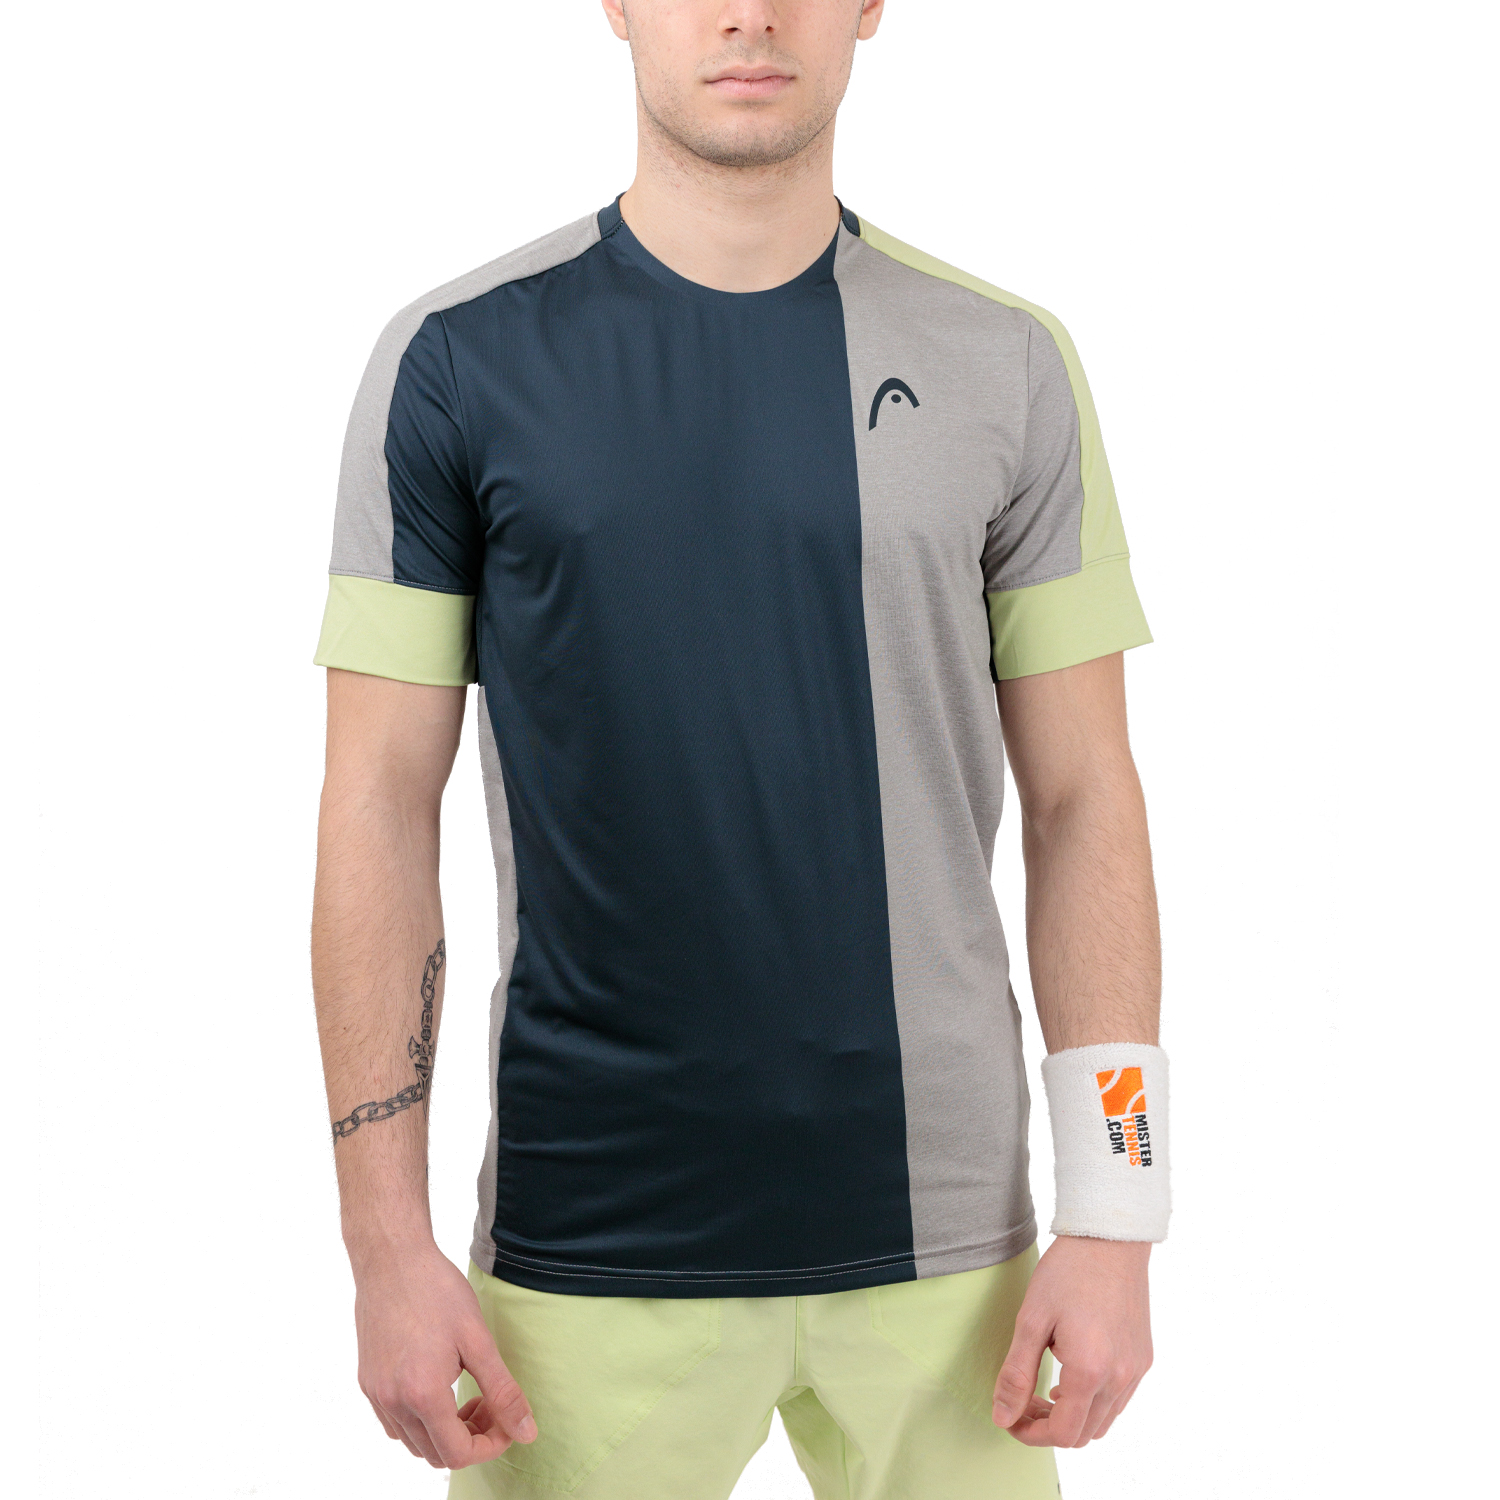 Head Play Tech Logo T-Shirt - Grey/Light Green